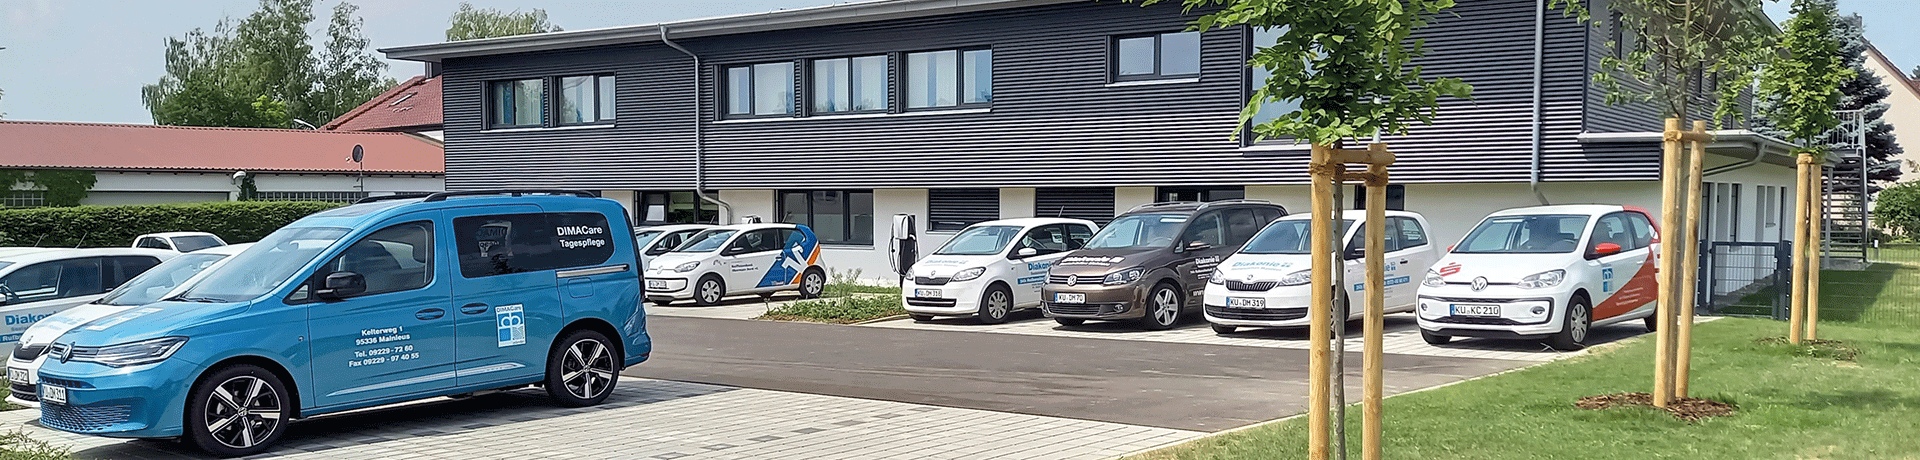 Parkplatz vor dem Gebäude mit Autos der Diakonie